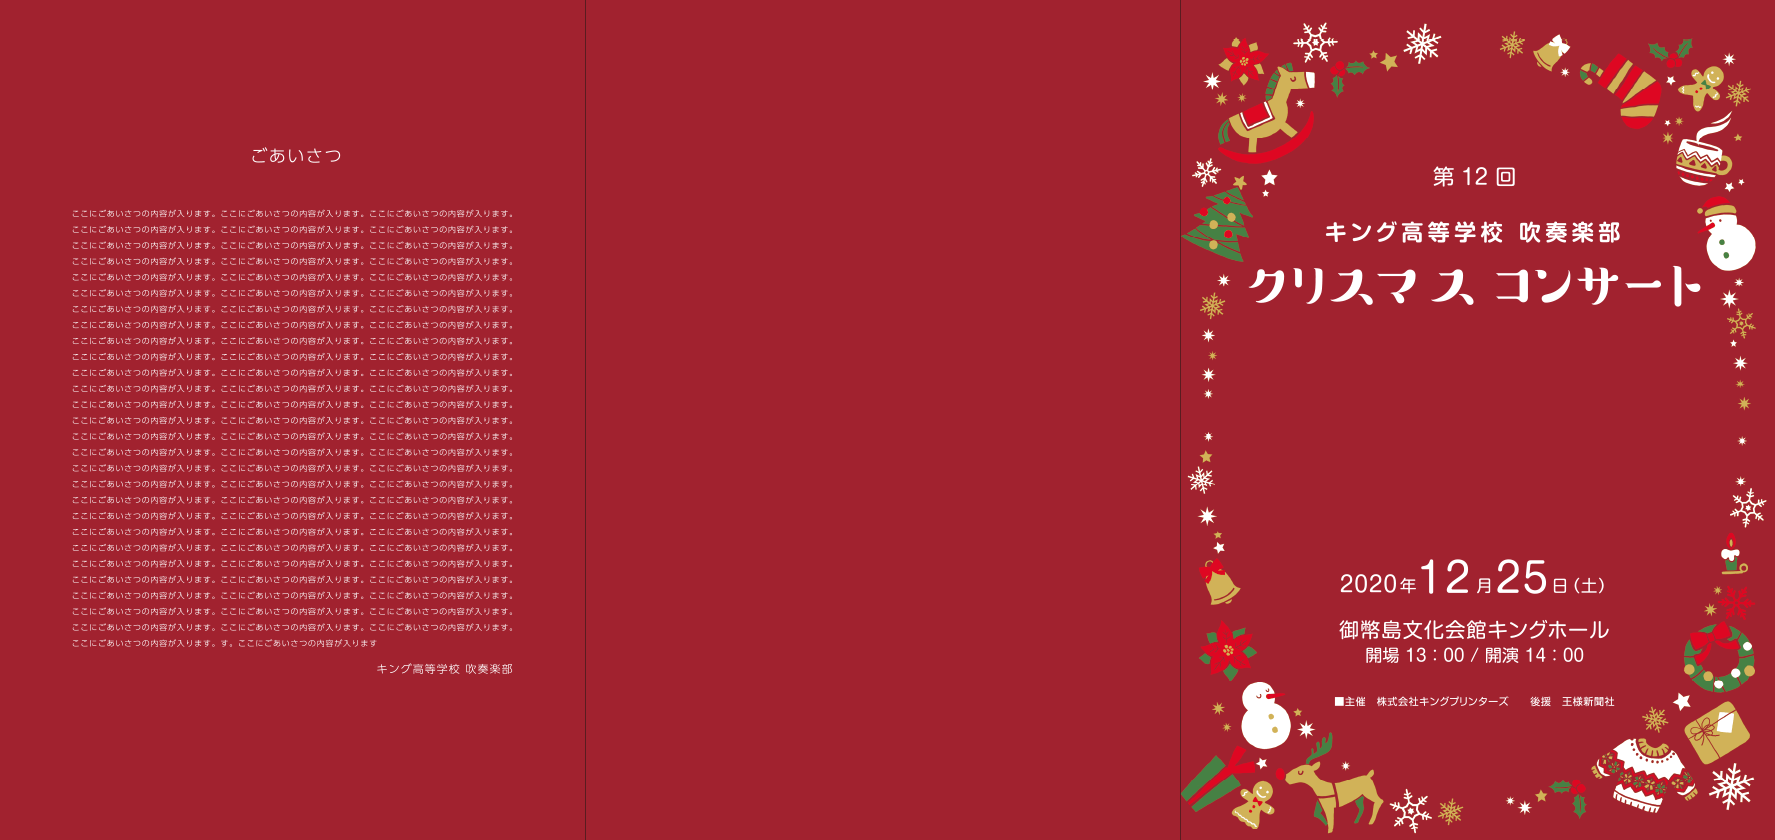 クリスマスコンサート三つ折りパンフレット大のオモテ面のデザイン例3